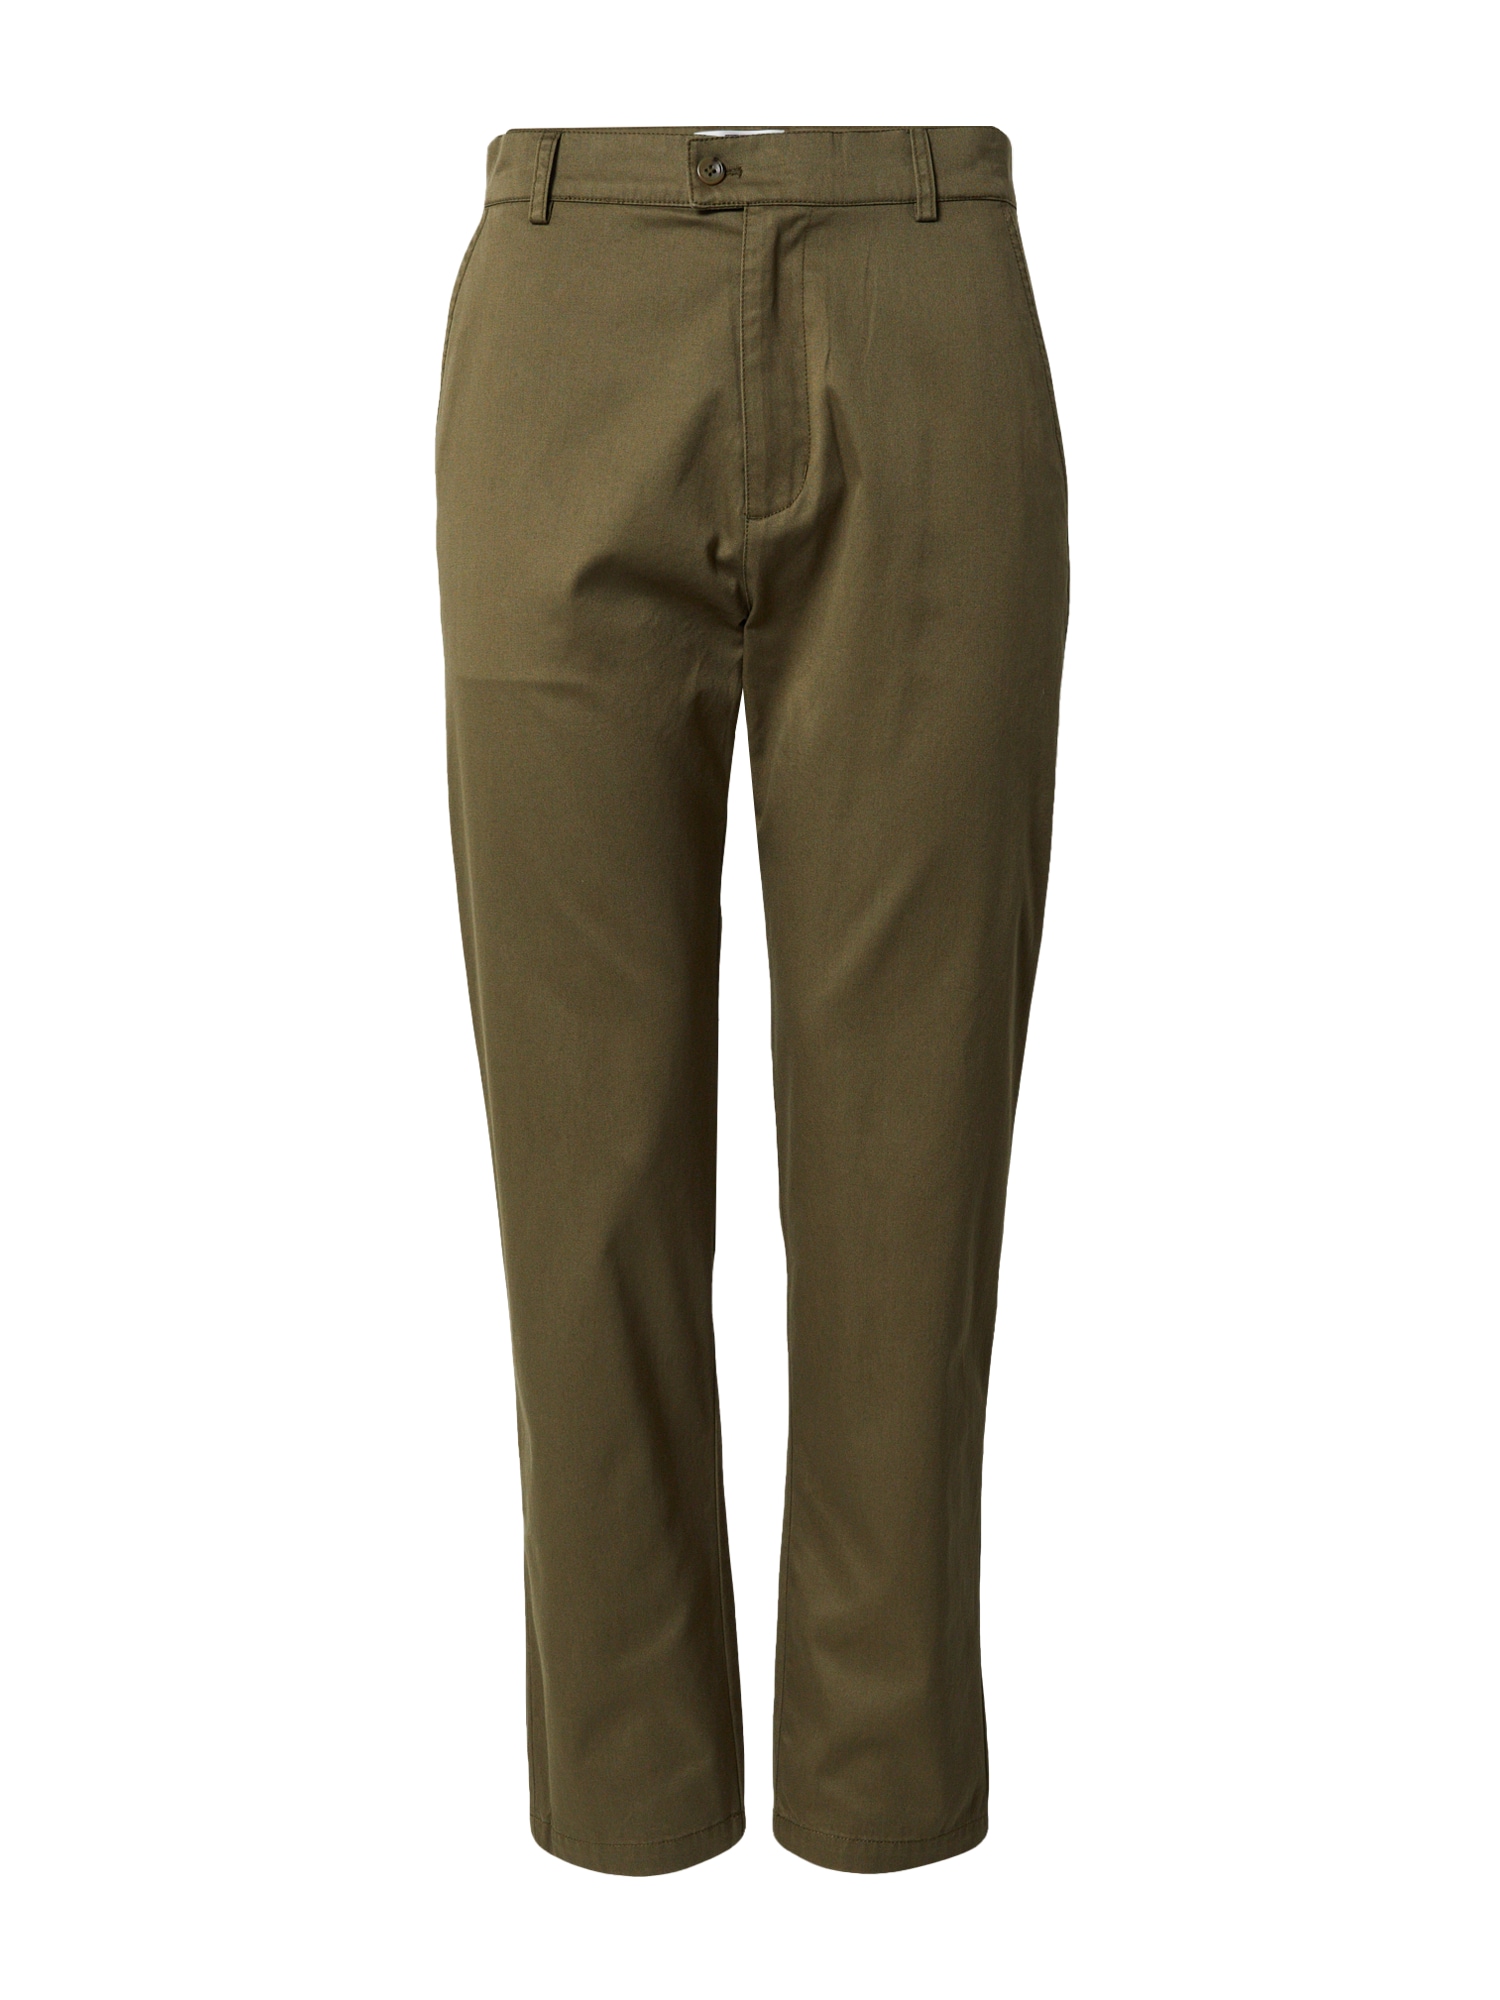 ABOUT YOU x Jaime Lorente „Chino“ stiliaus kelnės 'Timur' alyvuogių spalva